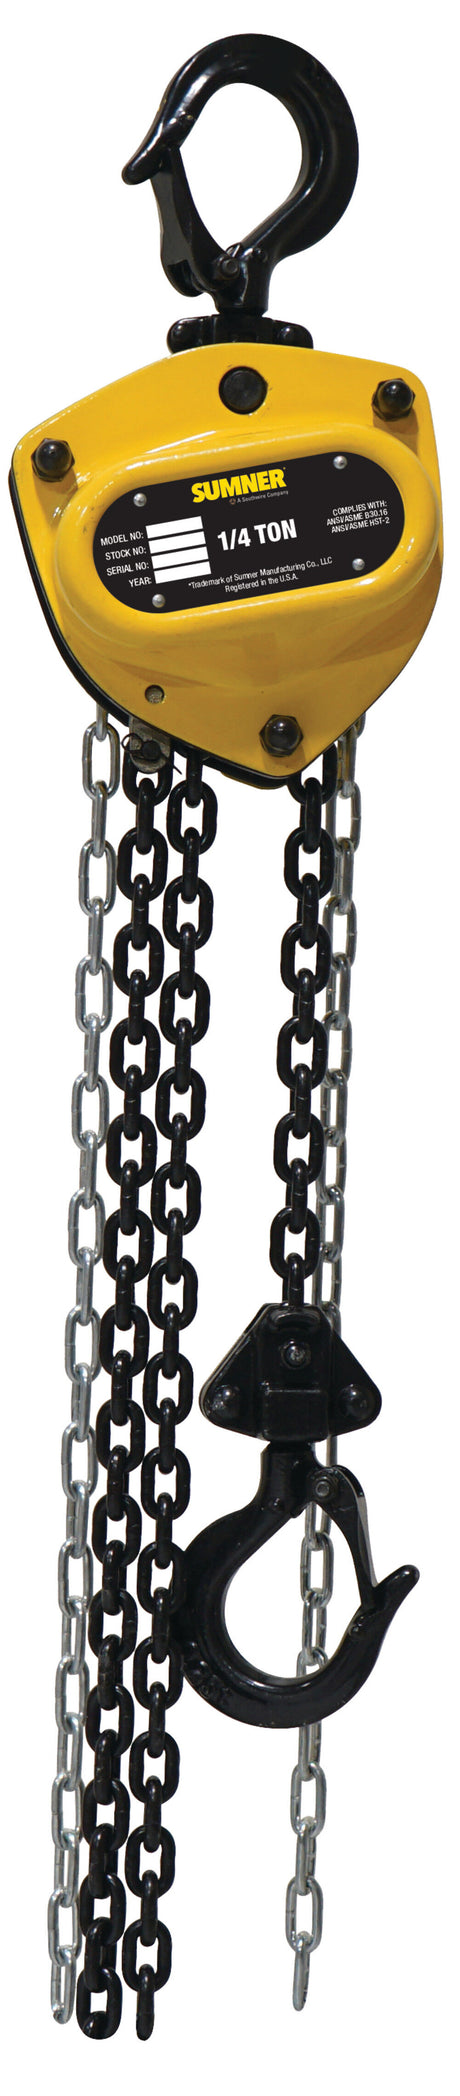 Chain Hoist 1/4 Ton with 10' Chain Fall 787400